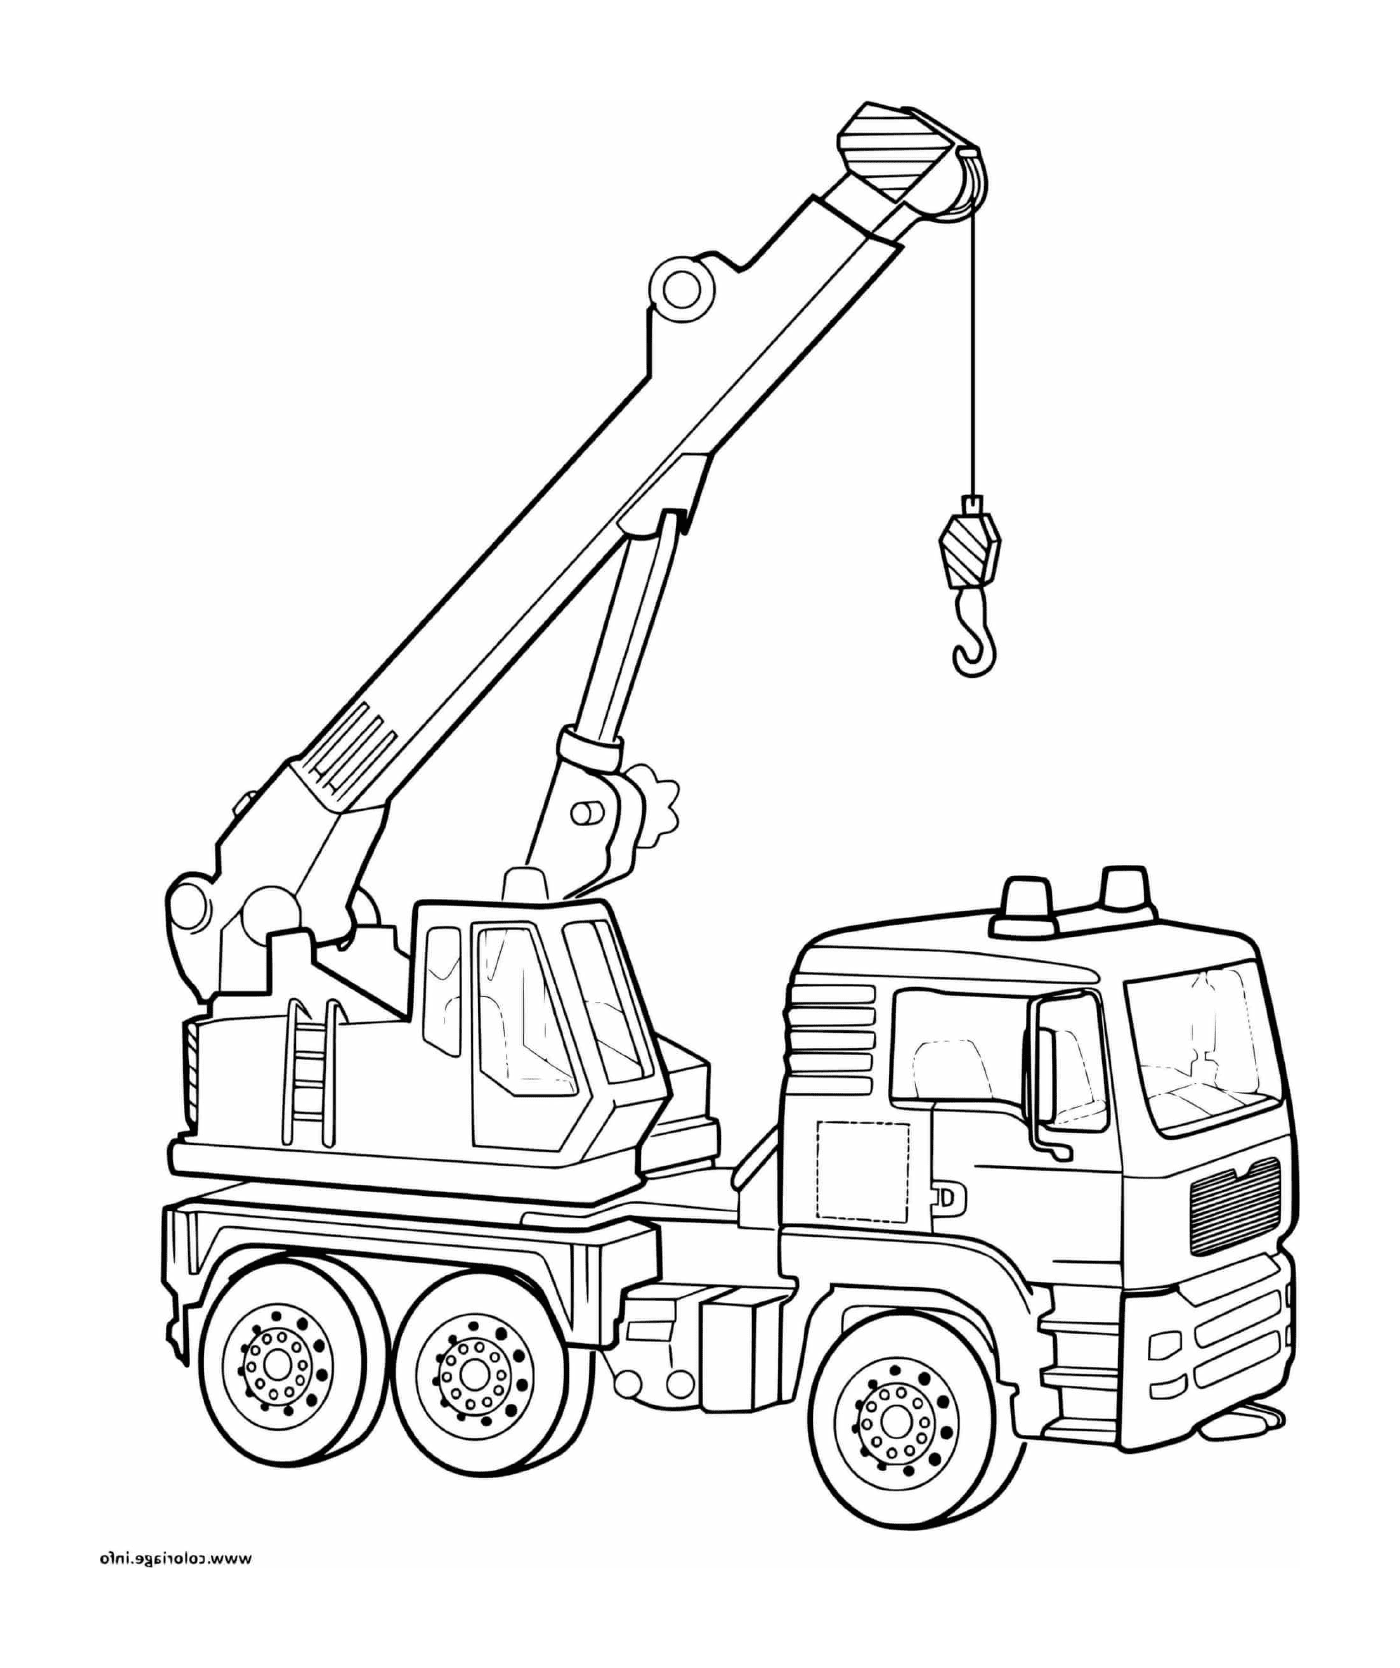  Ein Kranwagen auf einer Baustelle 